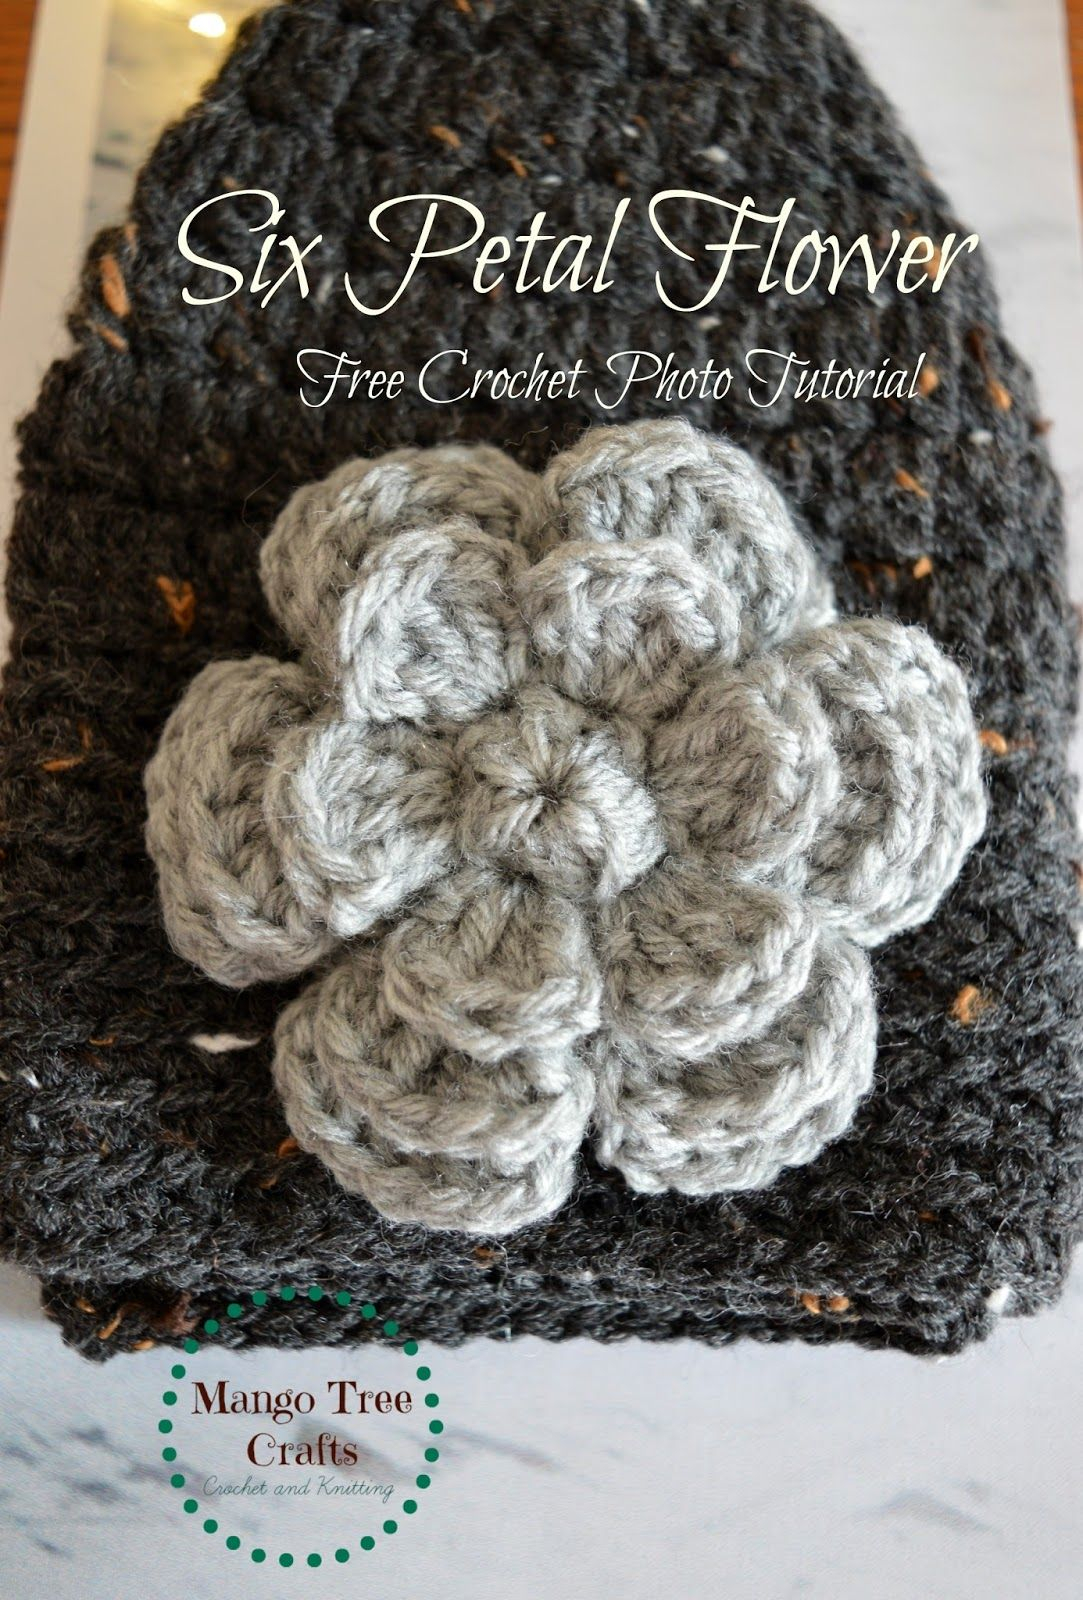 Free Patterns Crochet Crochet Flower Free Pattern Crochet Pinterest Crochet Flower